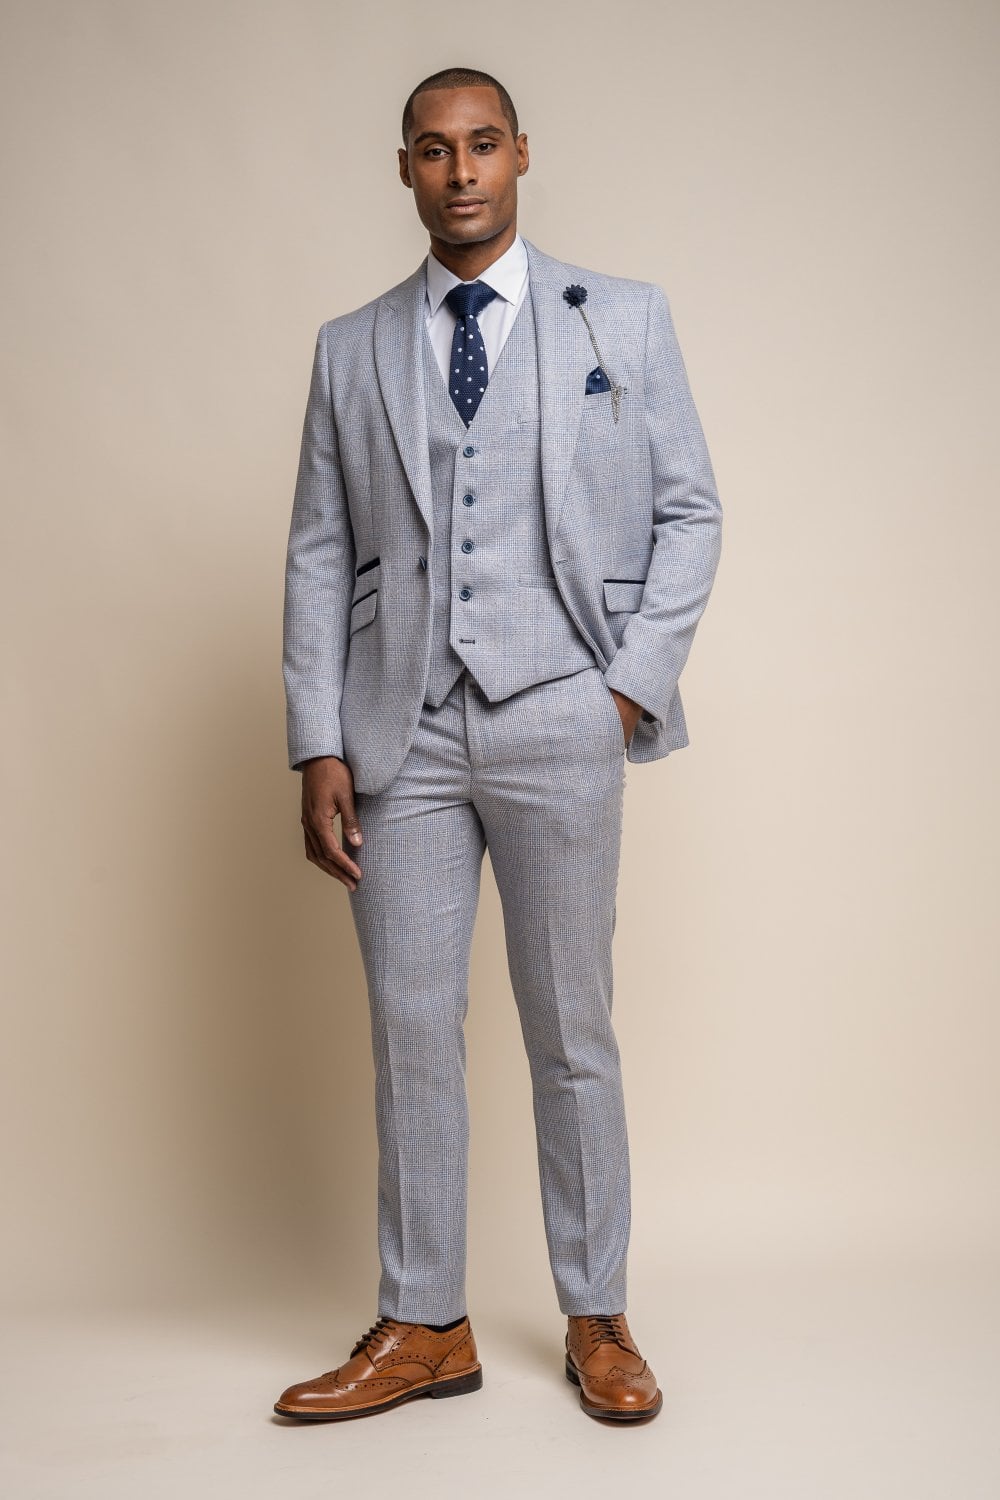 Caridi Sky Blue 3 Piece Wedding Suit